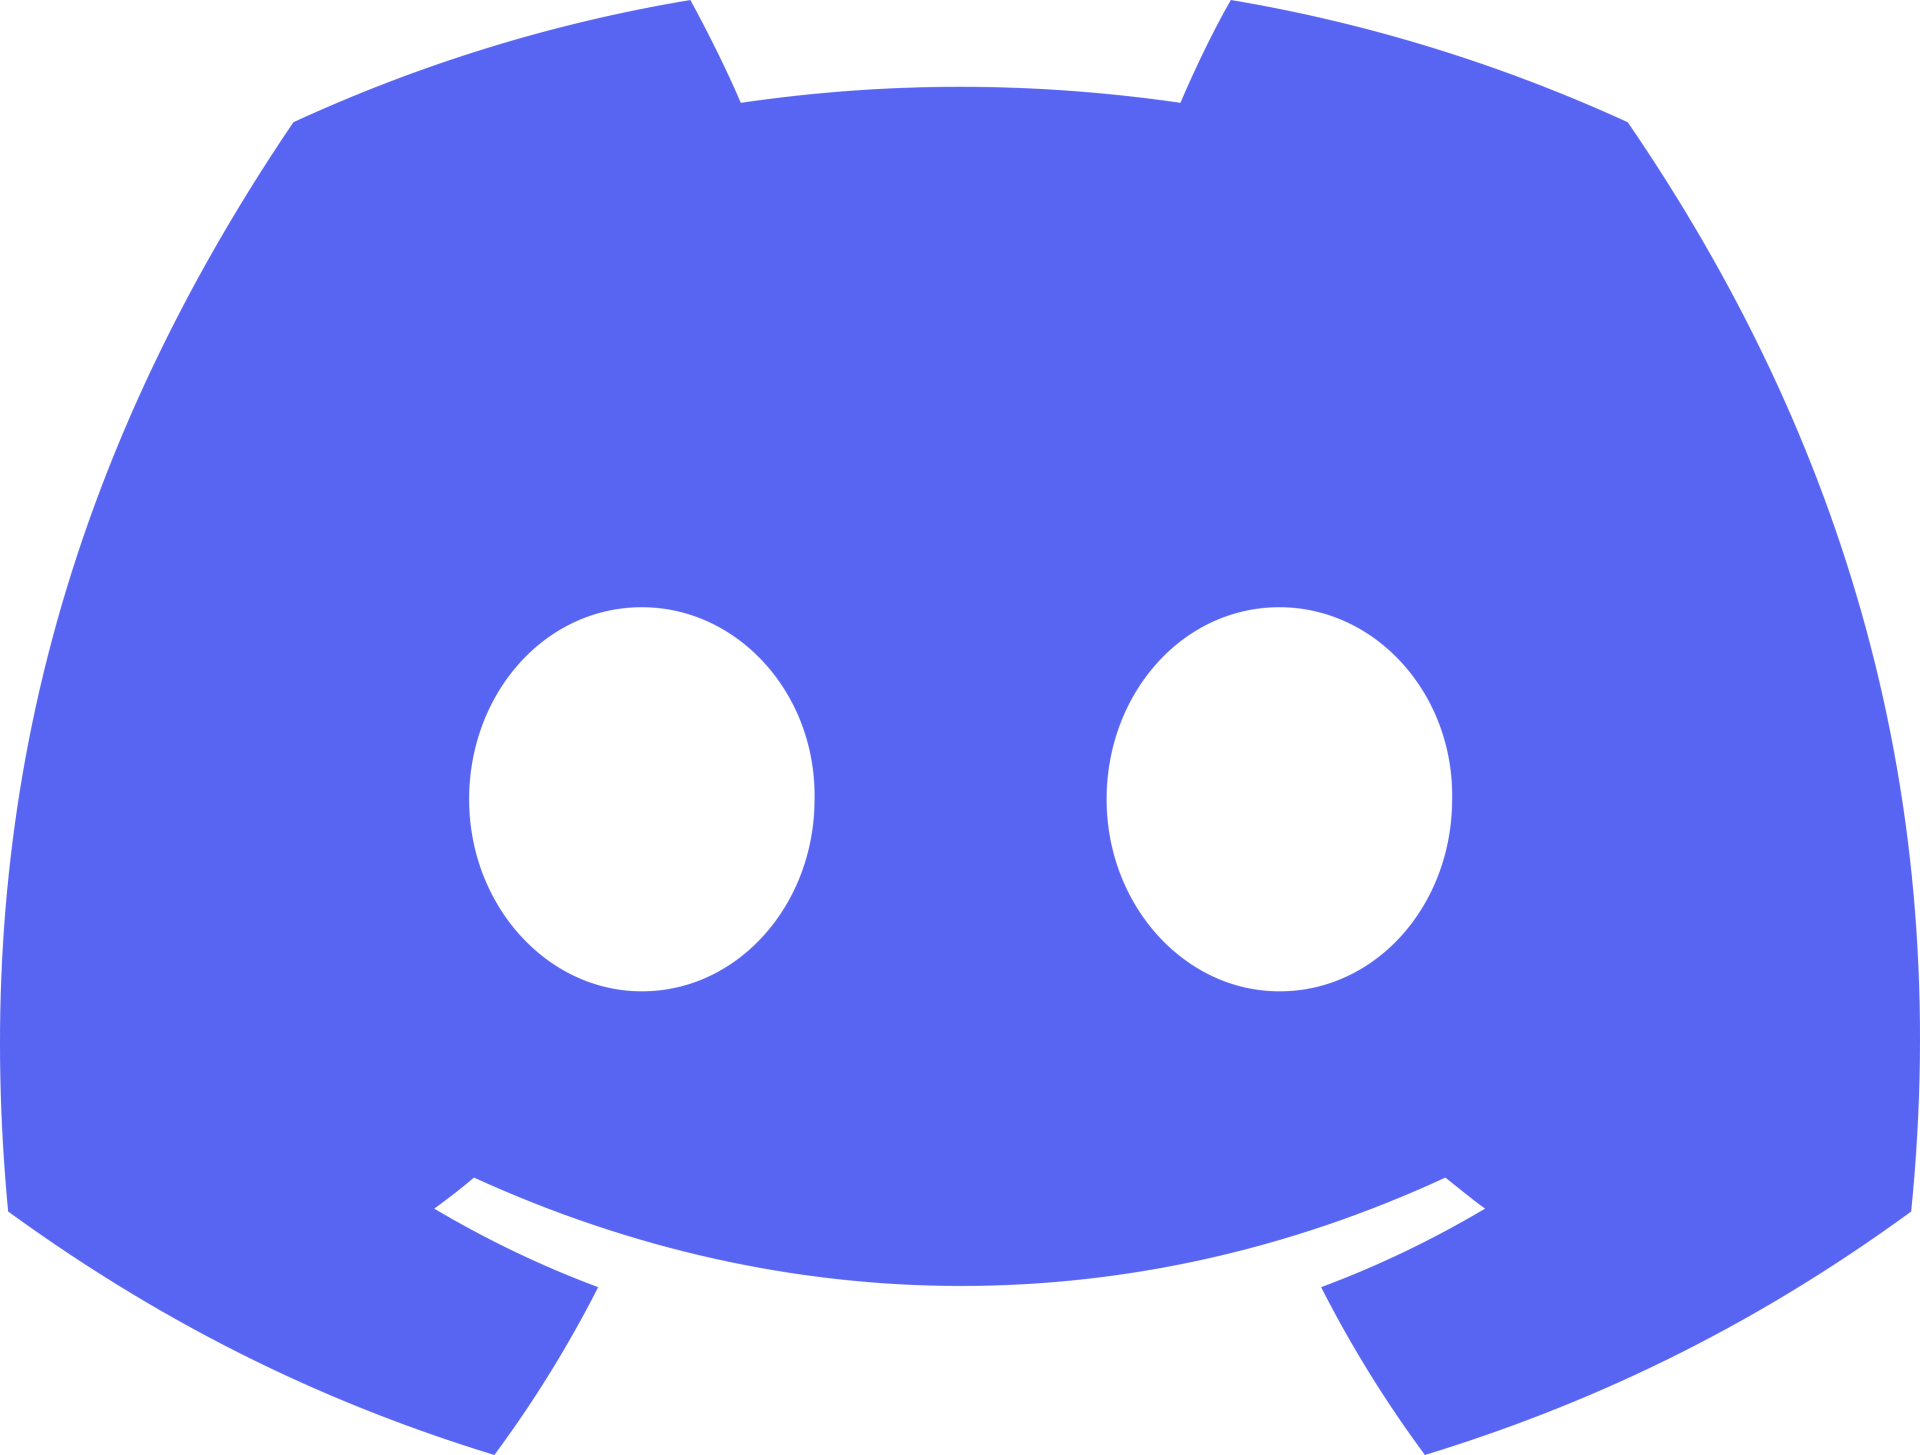 discord logo ideas 4